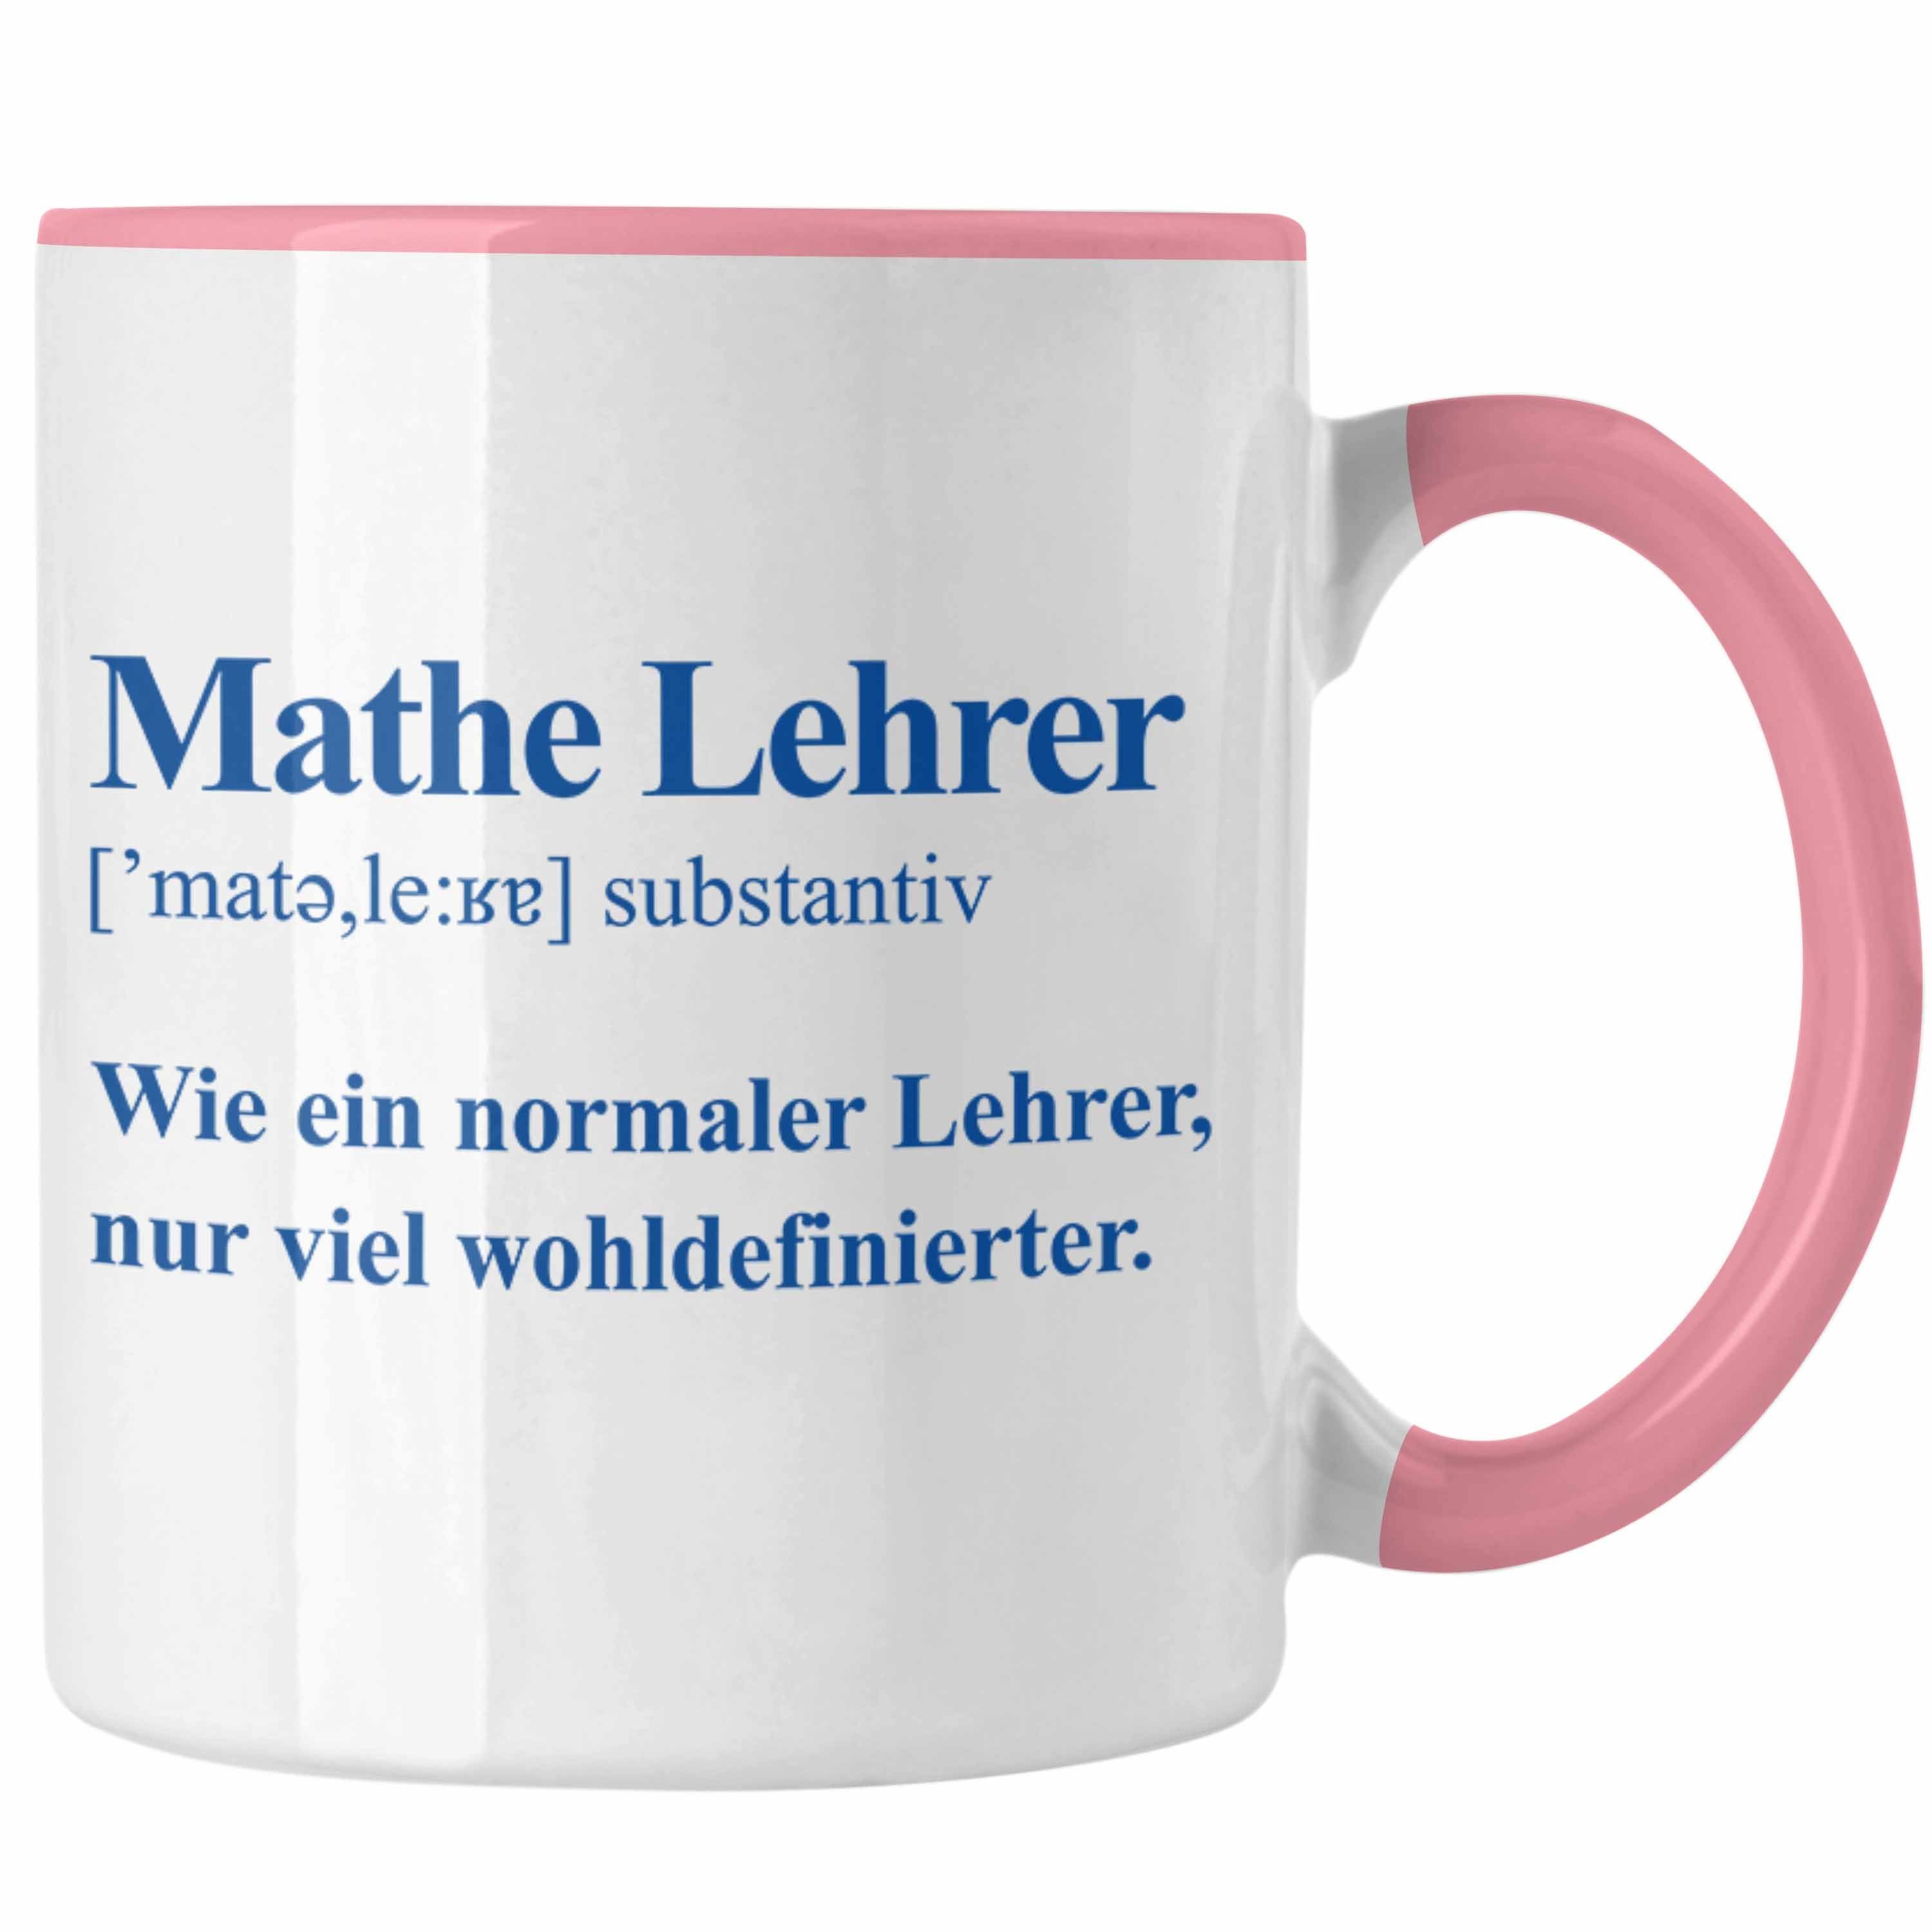 Trendation Tasse Trendation - Mathelehrer Tasse Mathematiker Tassen mit Spruch Lustig Kaffeetasse Geschenk Mathe Lehrer Rosa